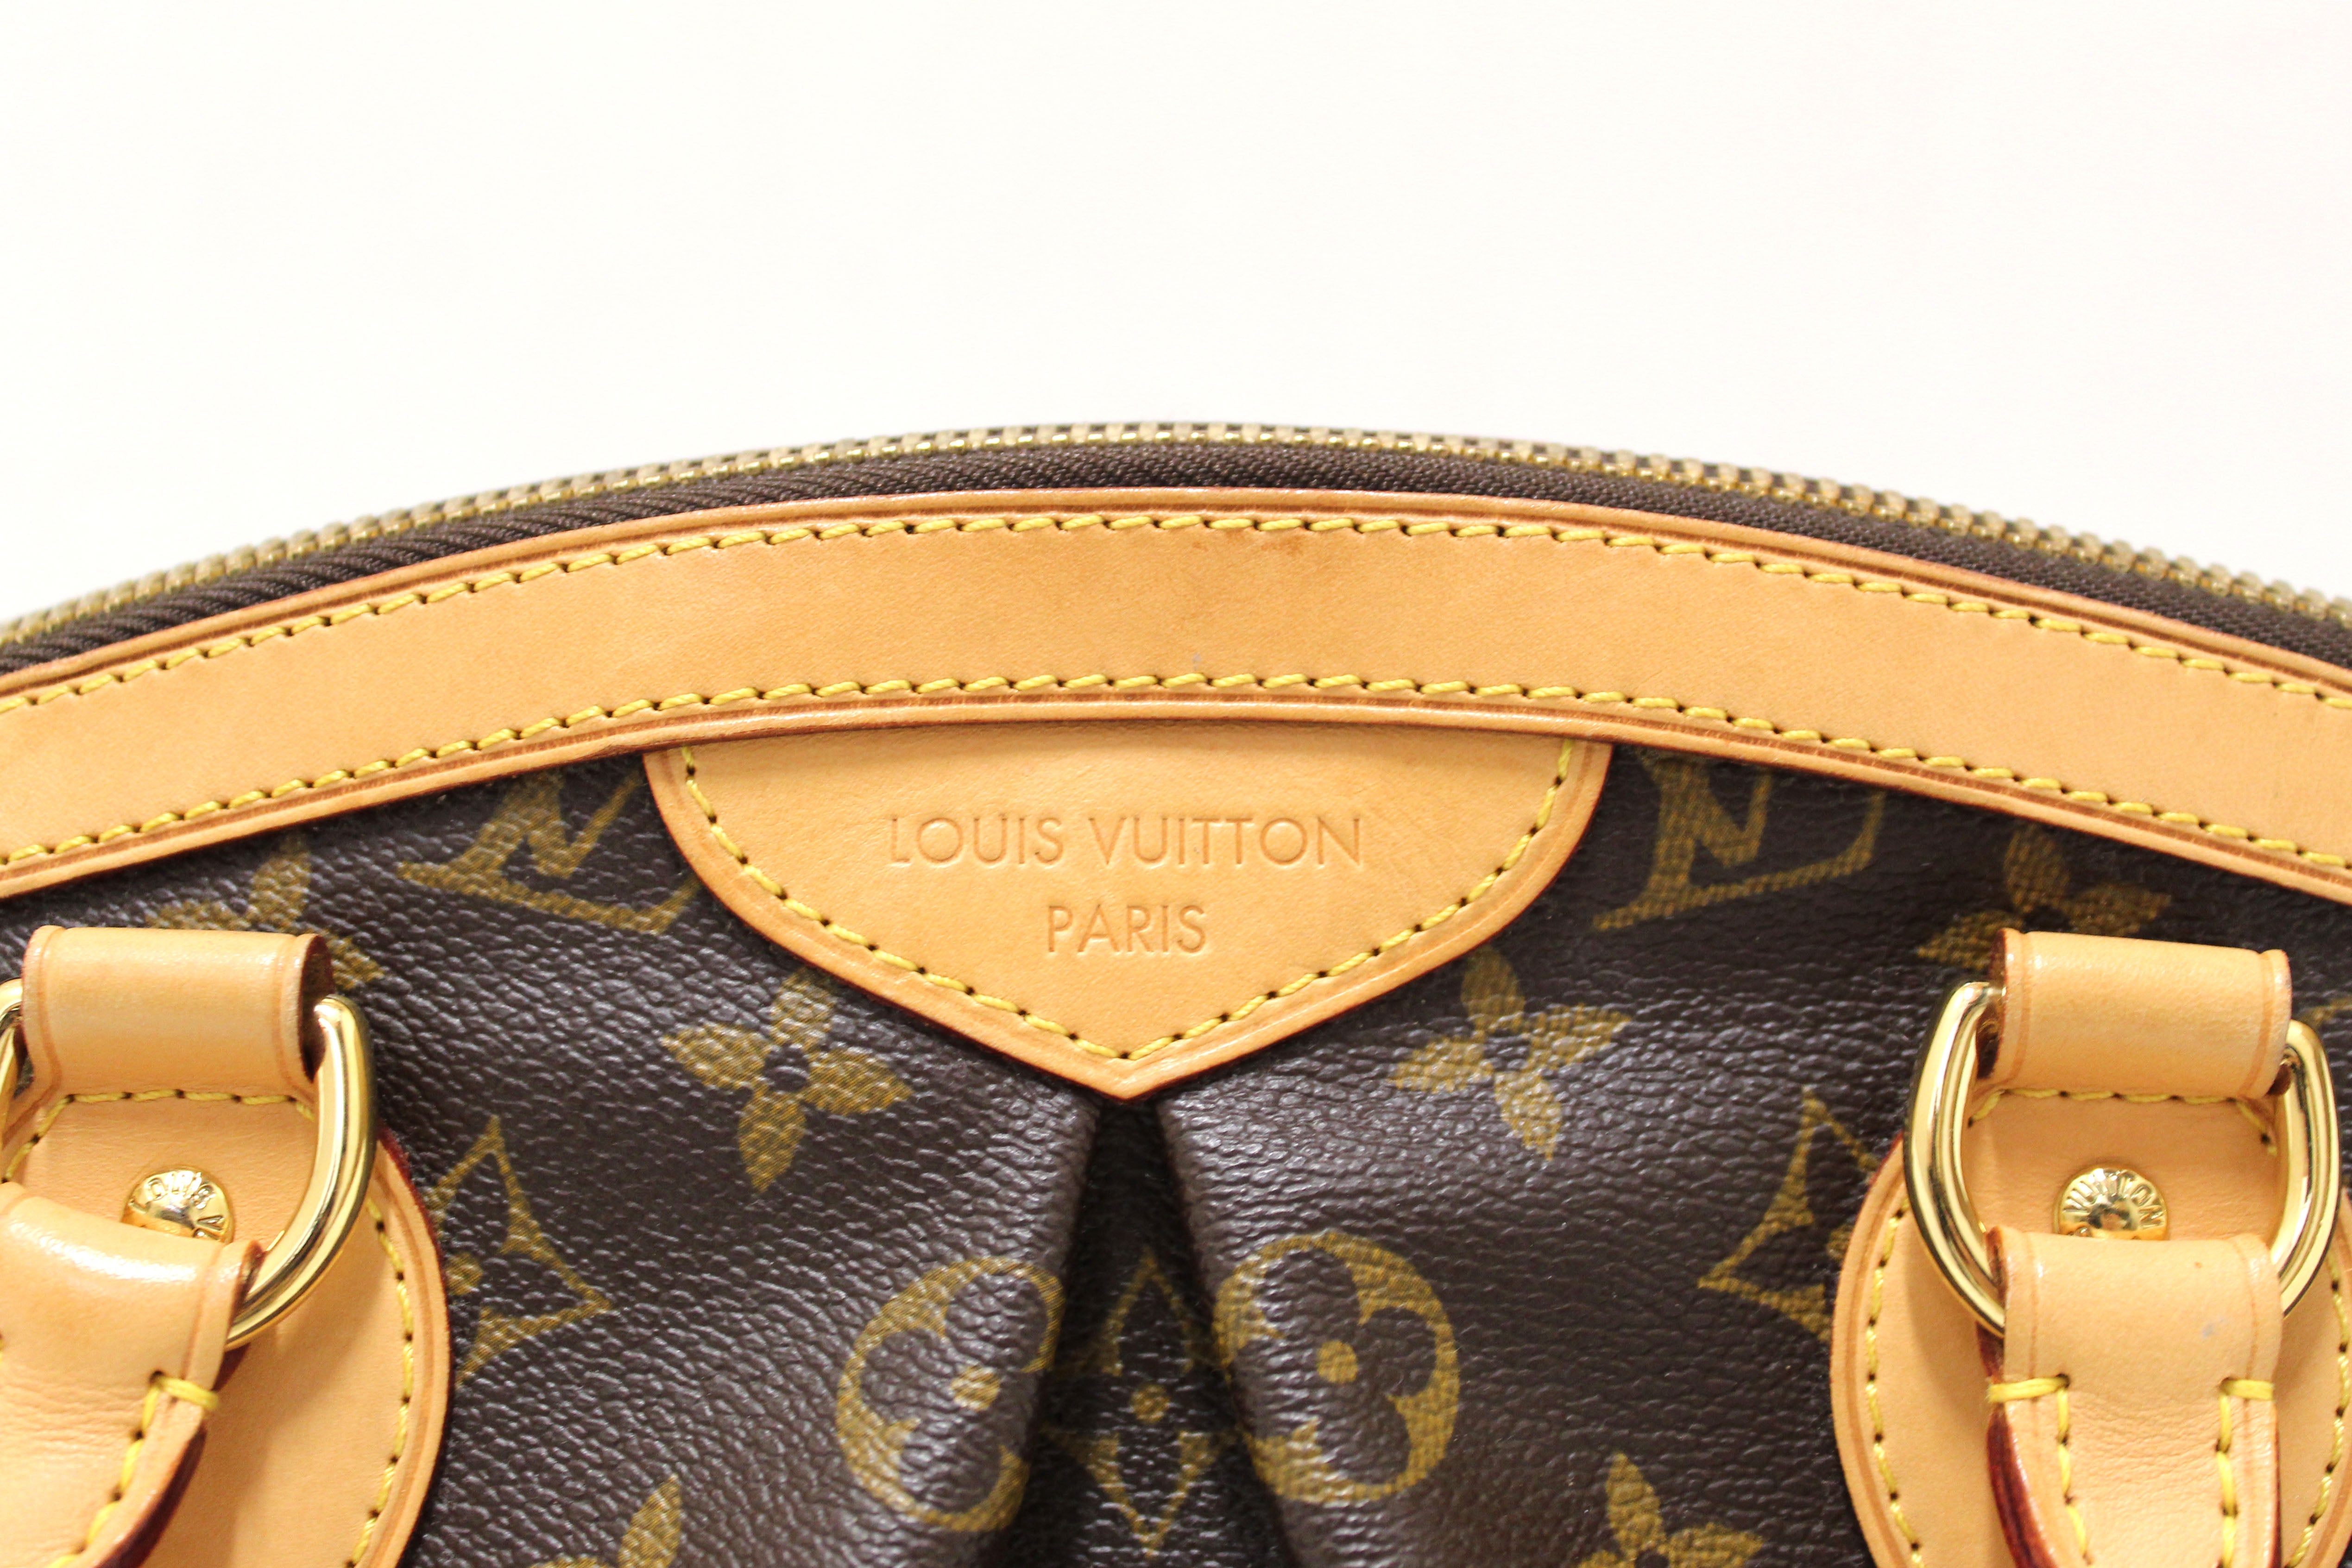 Louis Vuitton Monogram Tivoli PM - Vintage Handbag